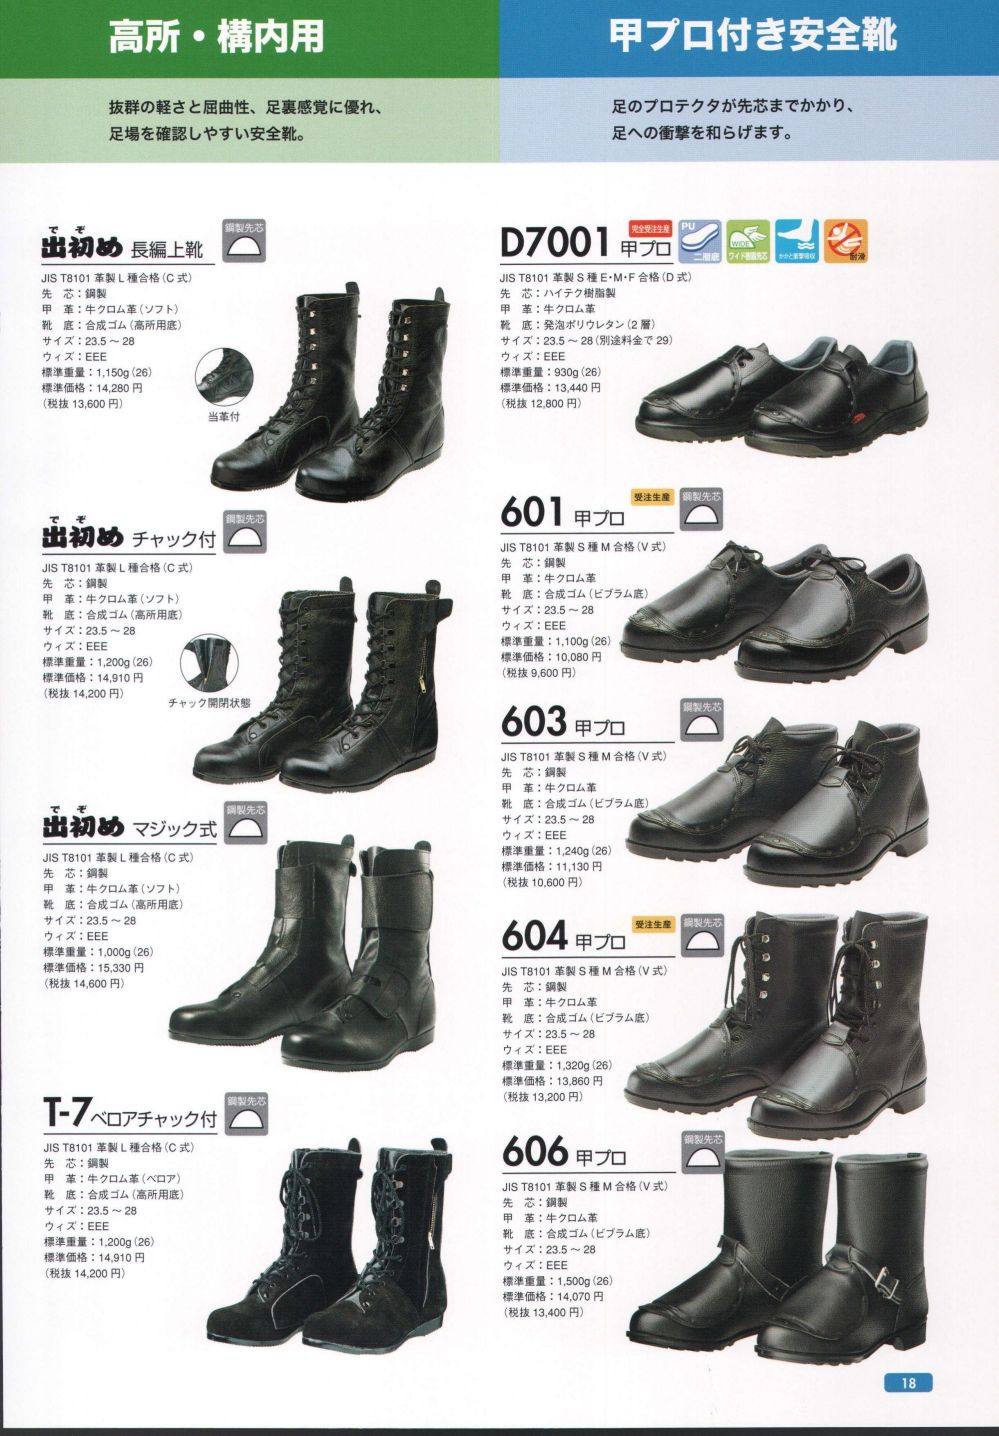 ドンケル 安全靴 マジック式 長編上靴 JIS T8101革製S種合格 (V式) 654 メンズ ブラック 27 - 3